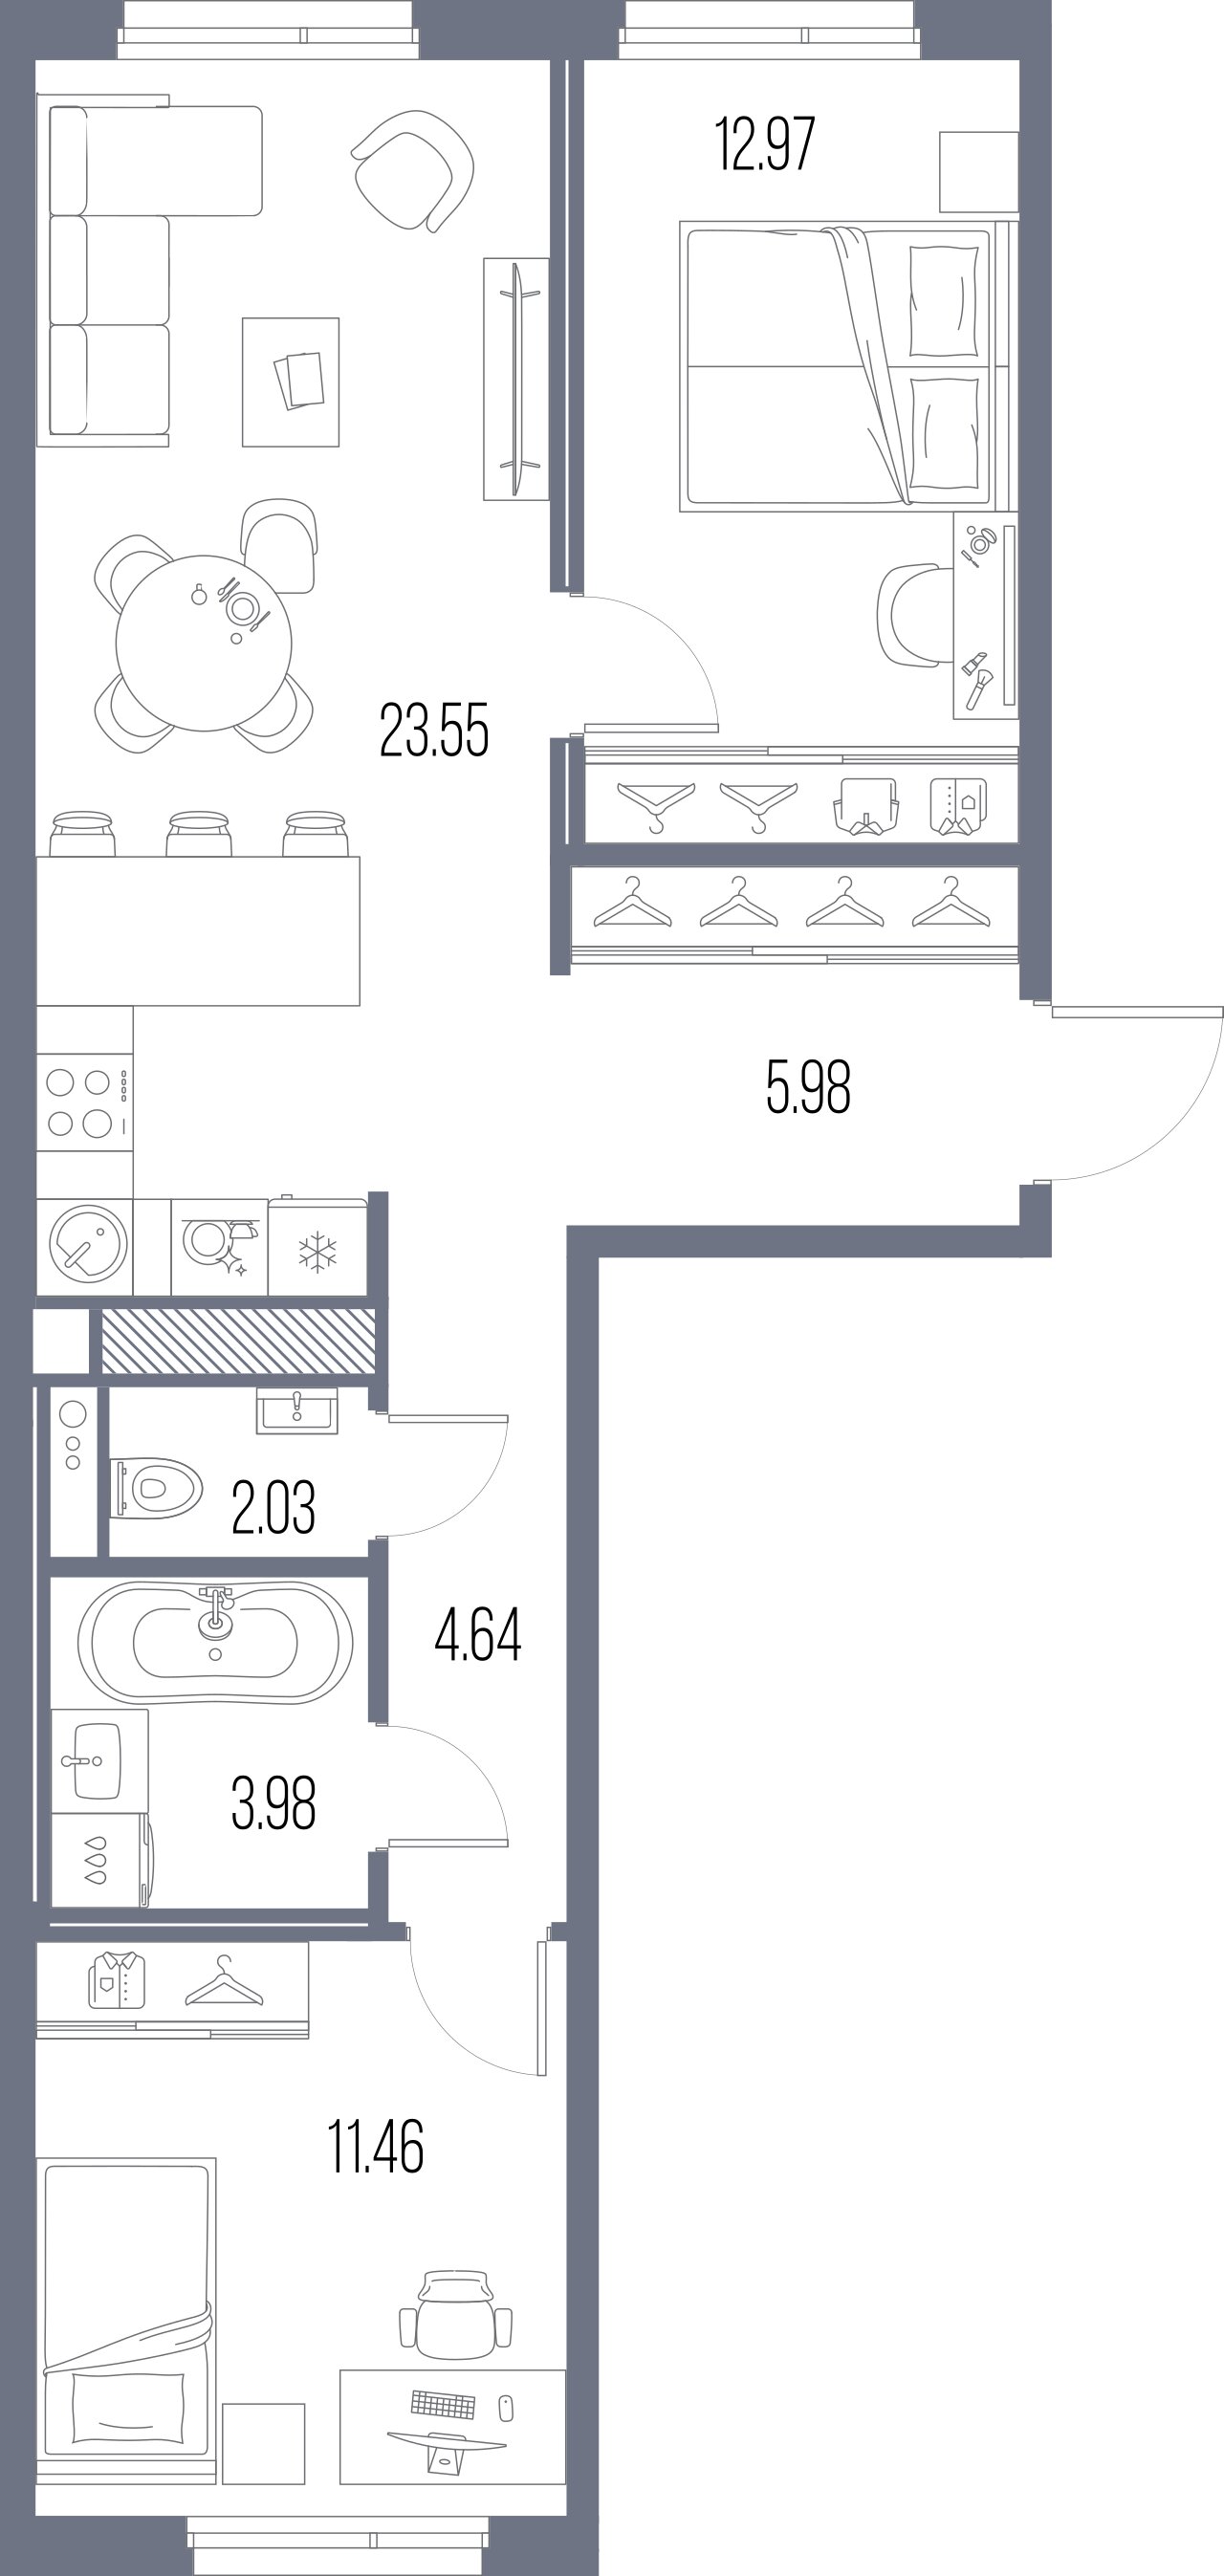 2-комнатная квартира №8 в: Legenda Васильевского: 64.61 м²; этаж: 8 - купить в Санкт-Петербурге